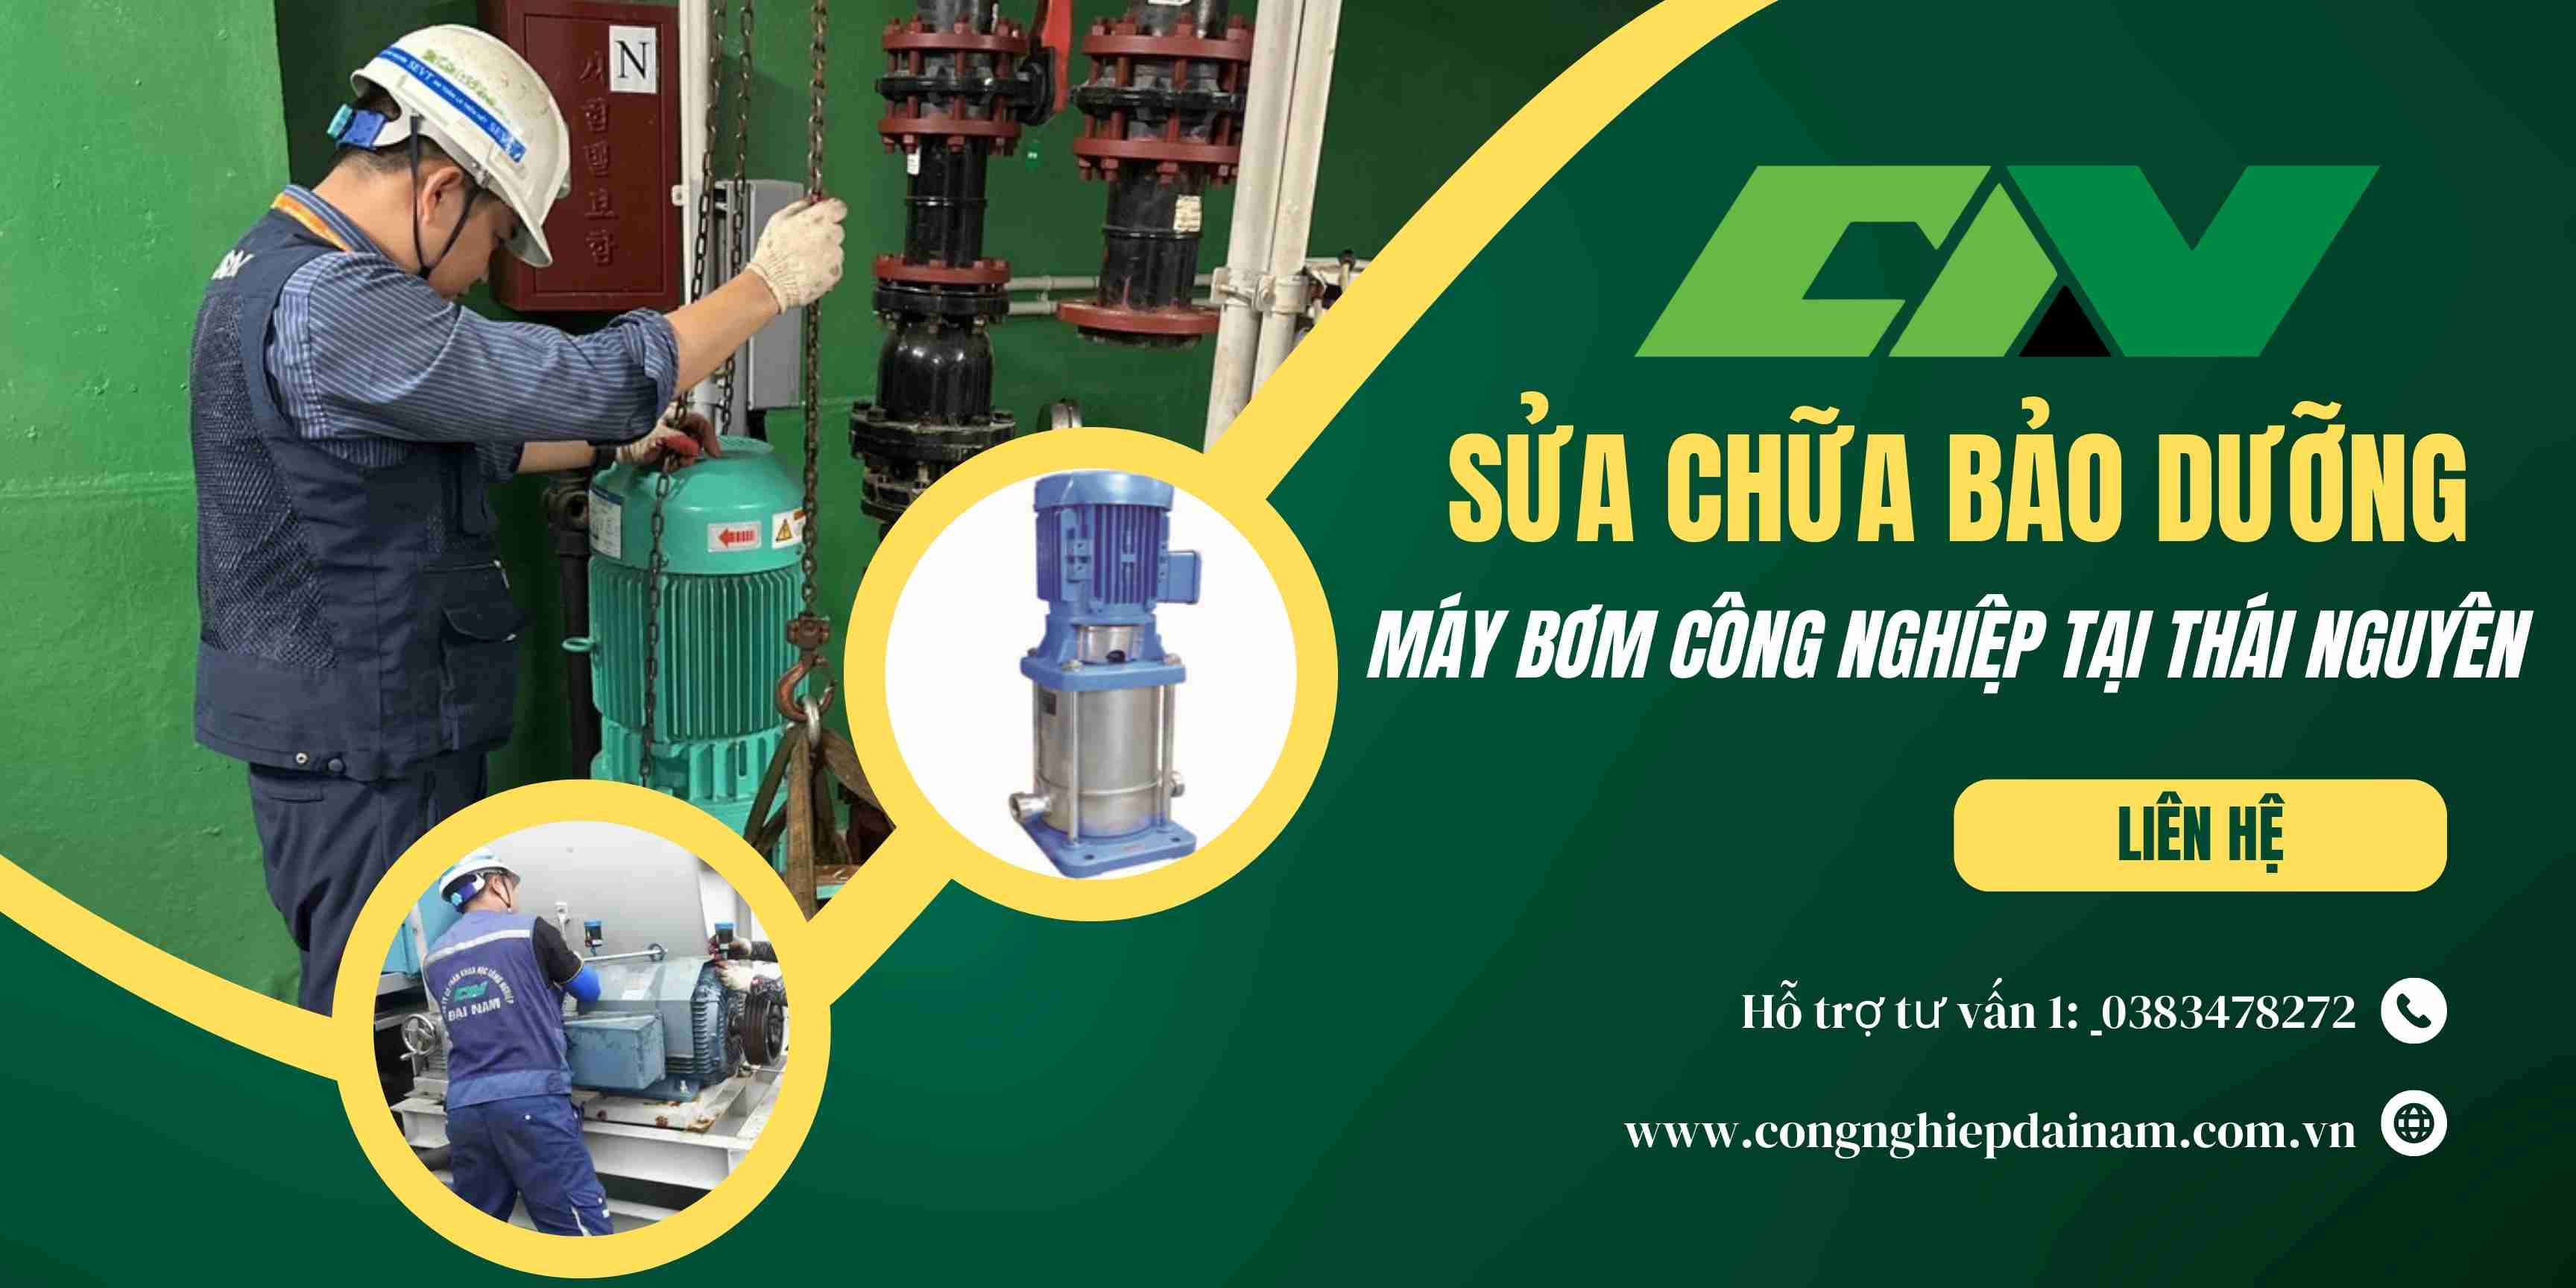 Bảo dưỡng và sửa chữa máy bơm công nghiệp tại Thái Nguyên